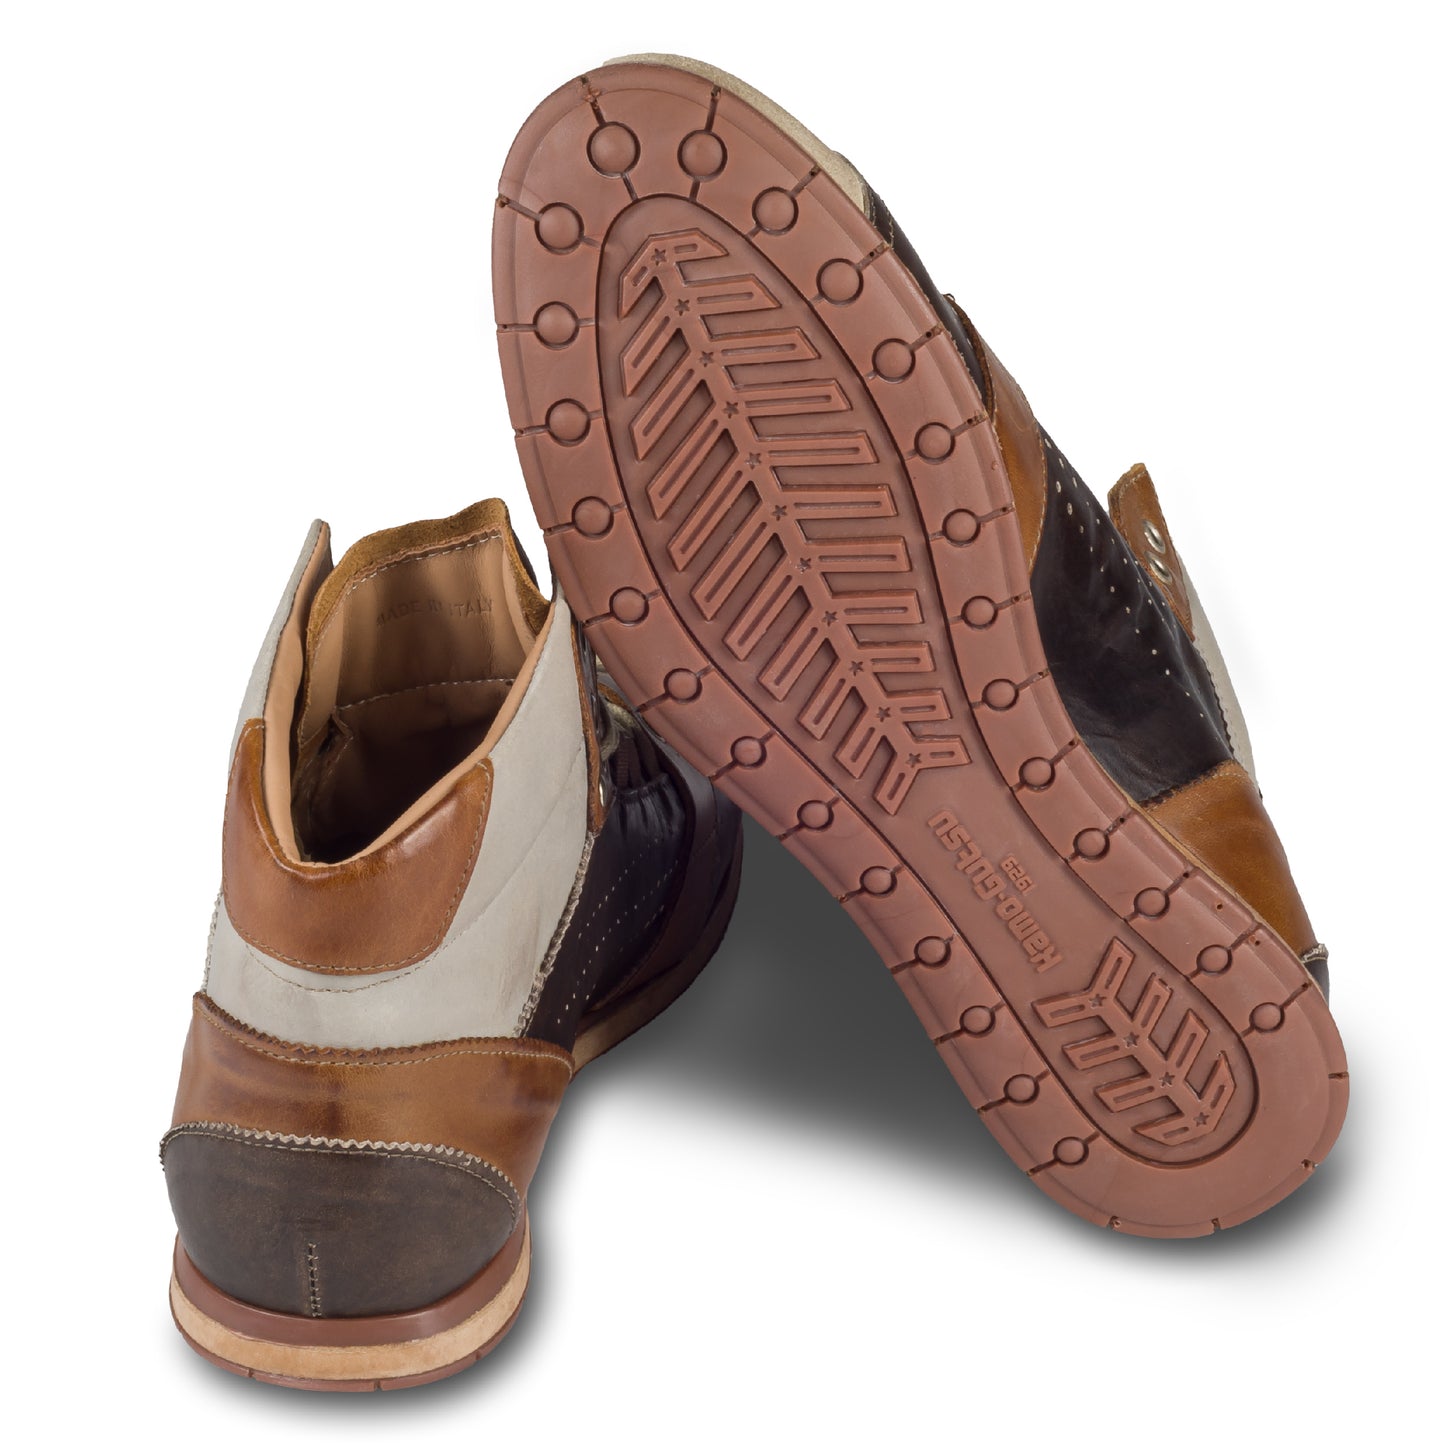 KAMO-GUTSU Herren Leder Sneaker Stiefel, braun/beige, Retro-Optik, High-Top, Modell TIFO-105 panna + pietra, Handgefertigt in Italien. Ansicht der Ferse und Sohlenunterseite. 